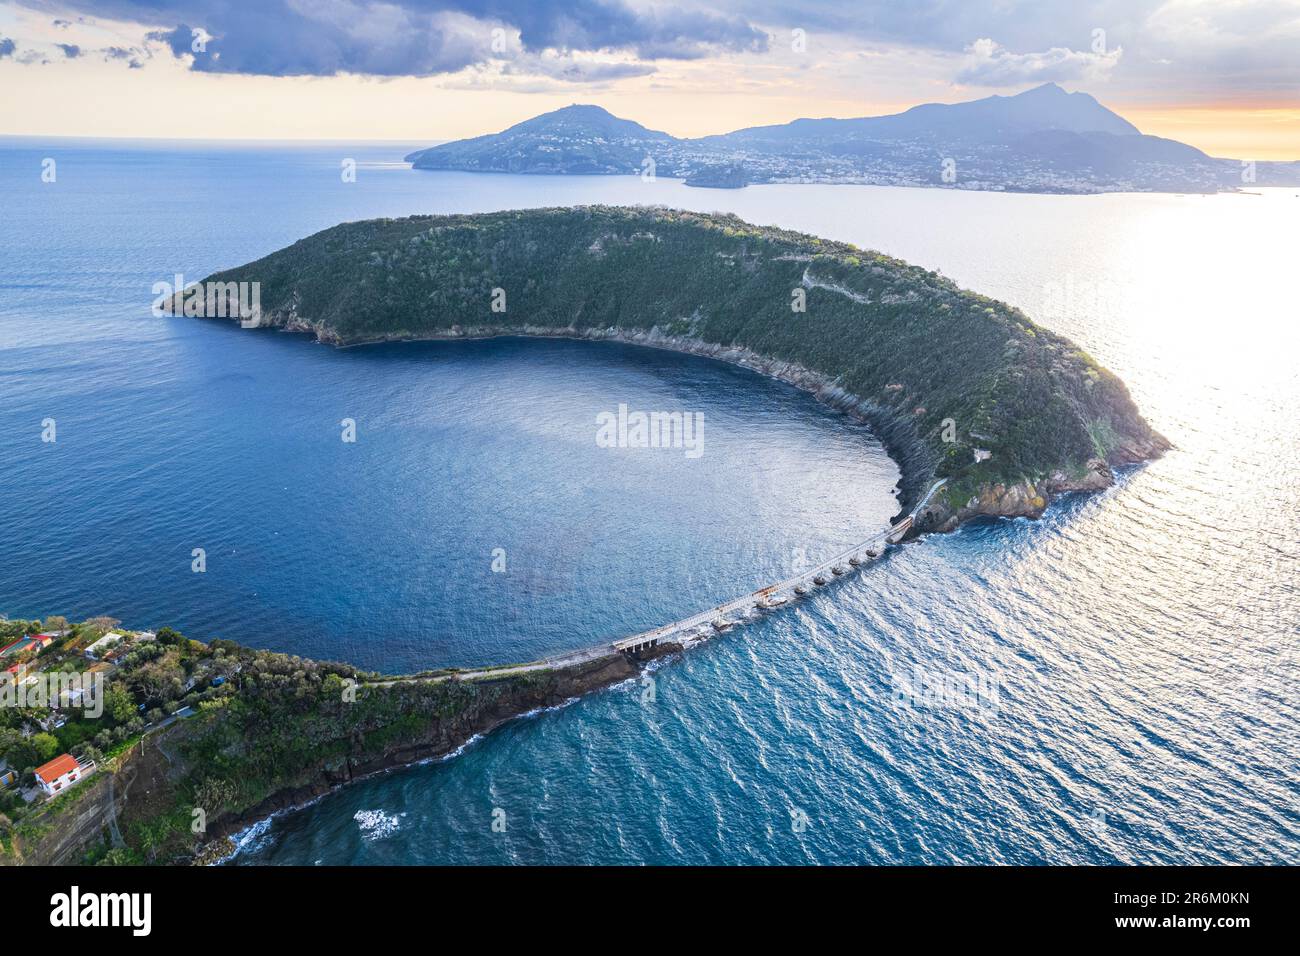 Luftaufnahme auf die Insel Vivara, der alte Vulkankrater stürzte zusammen, mit den Bergen der Insel Ischia im Hintergrund, dem Tyrrhenischen Meer Stockfoto